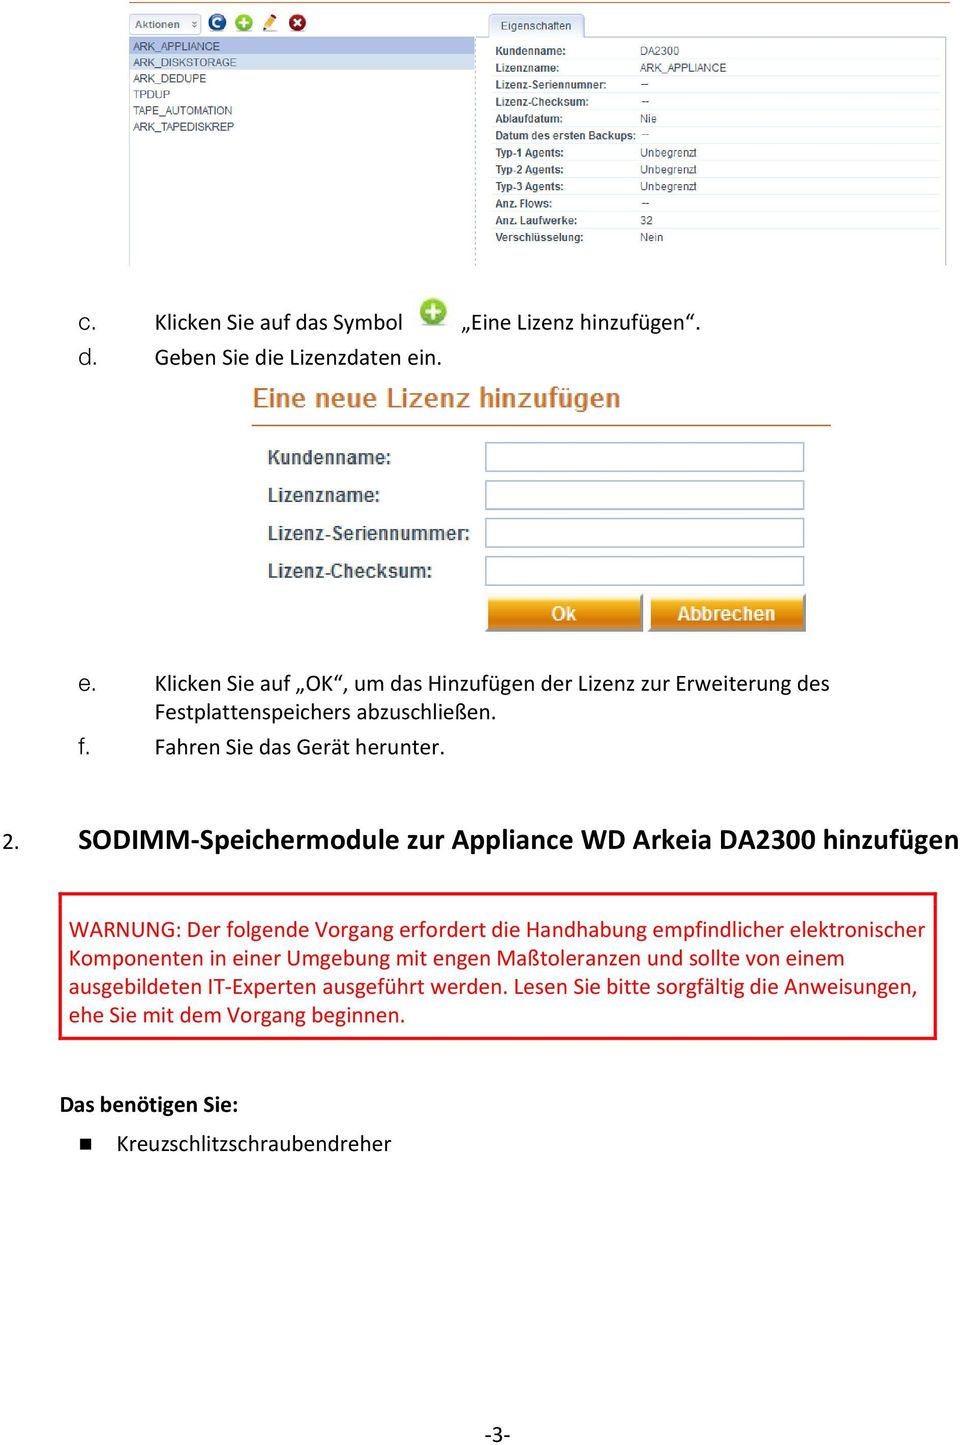 SODIMM-Speichermodule zur Appliance WD Arkeia DA2300 hinzufügen WARNUNG: Der folgende Vorgang erfordert die Handhabung empfindlicher elektronischer